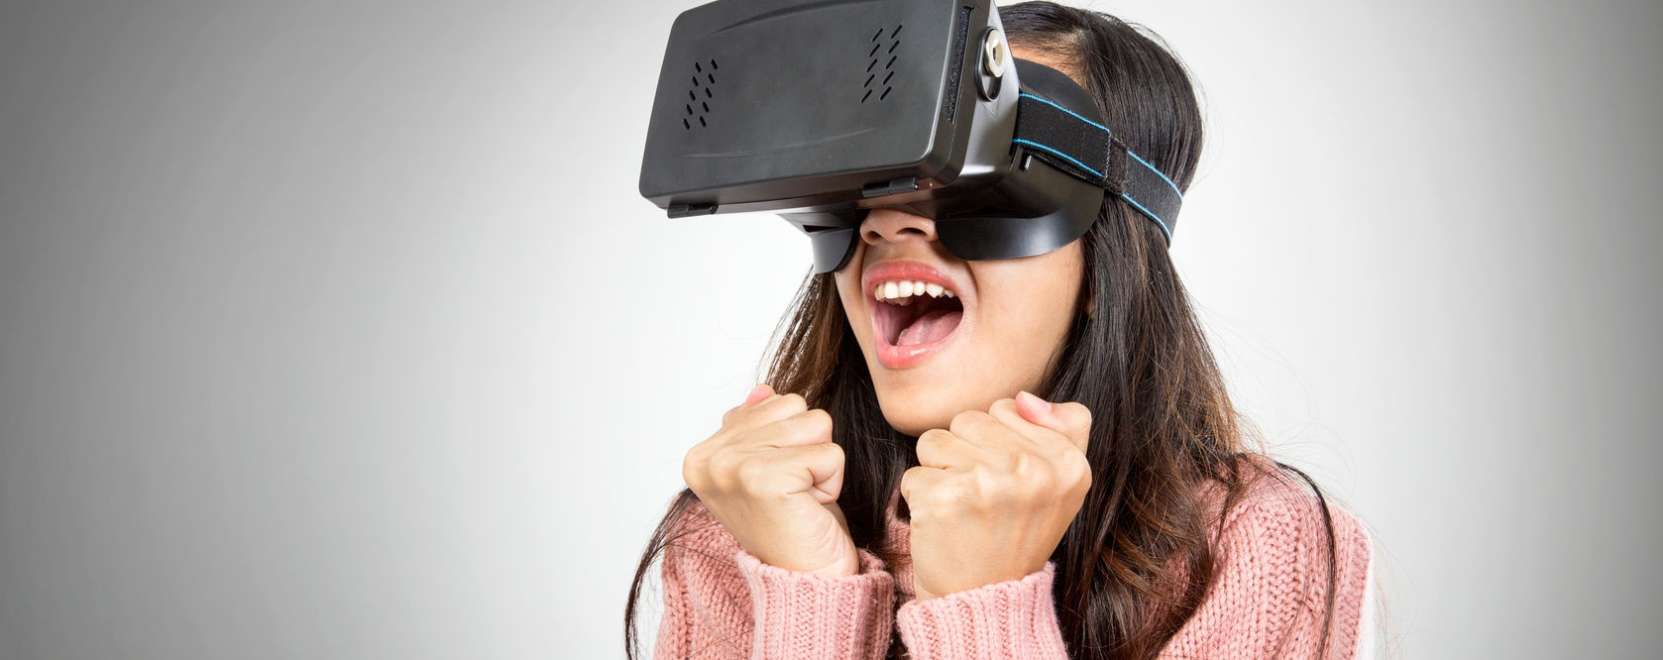 Az AR és VR dobhatná fel az elektronikai üzletek forgalmát